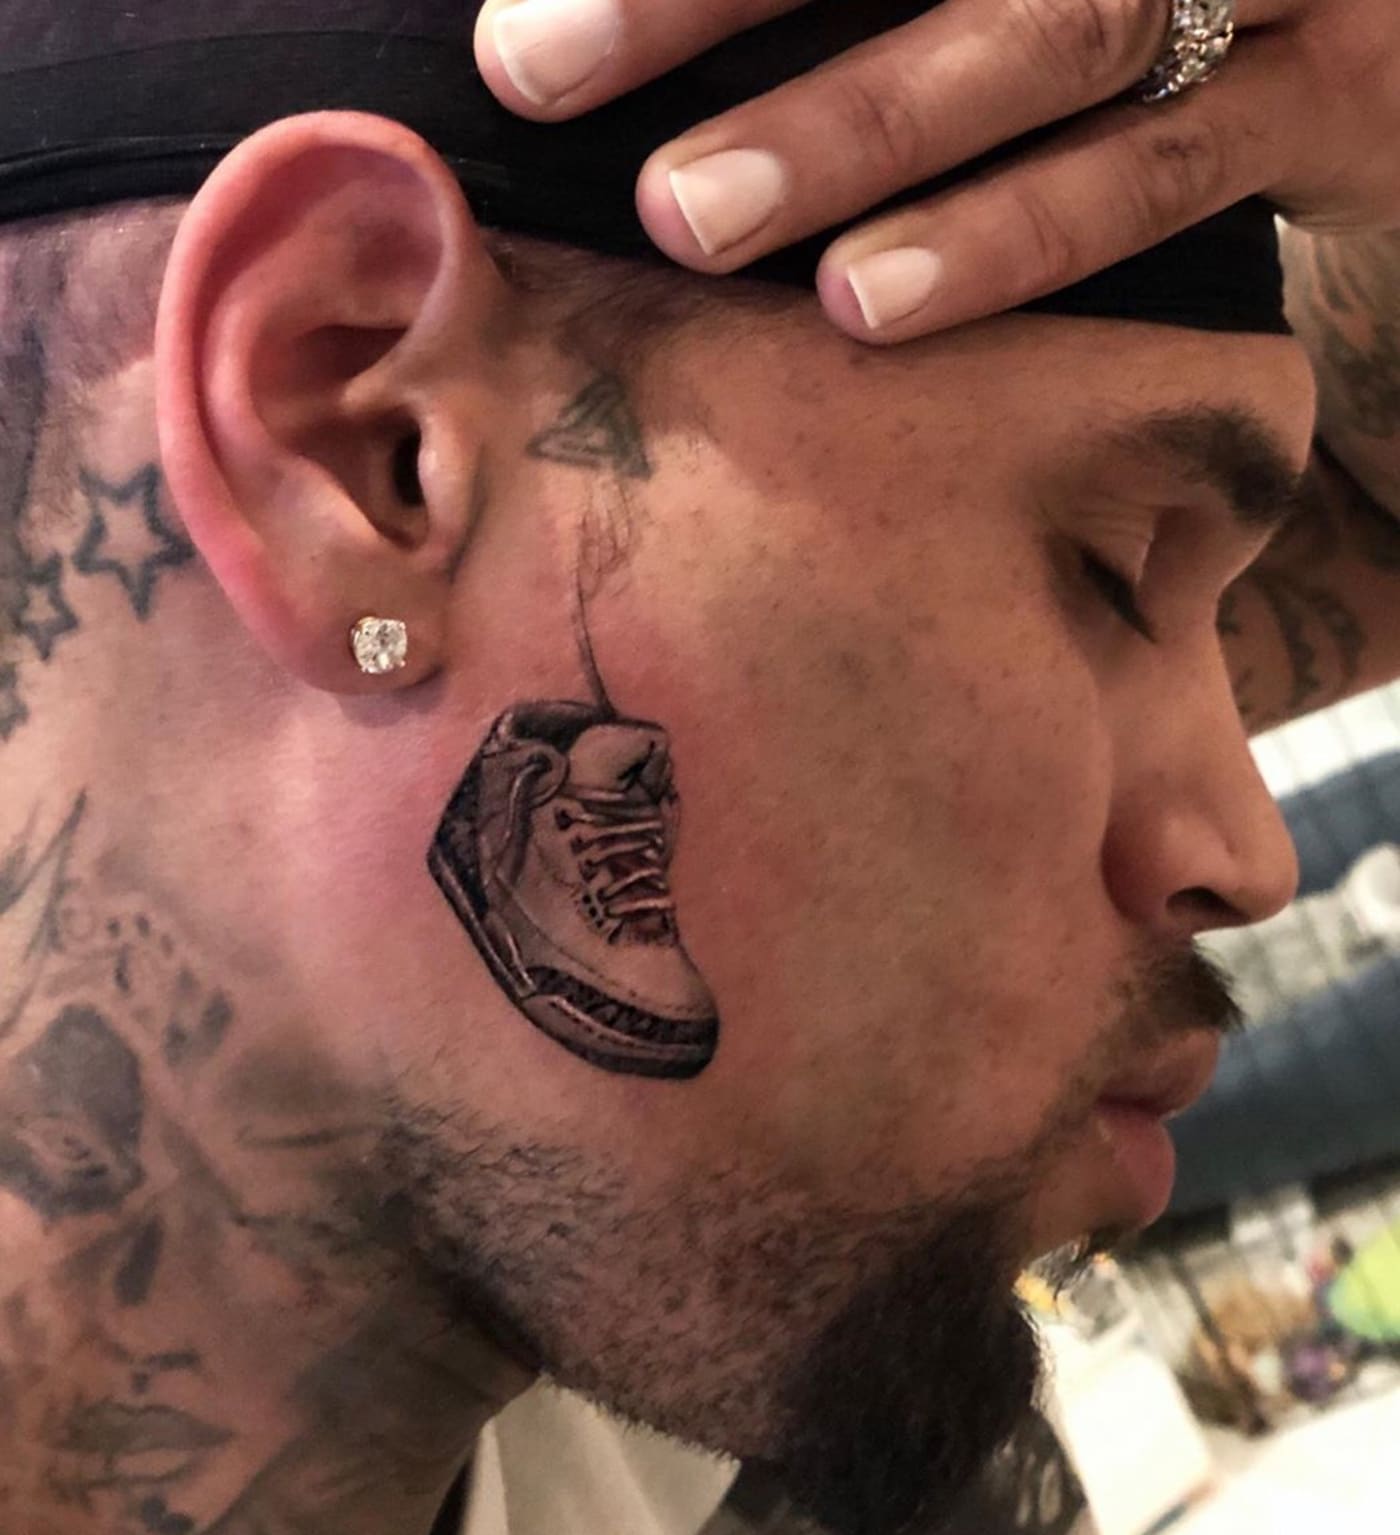 Chris Brown Air Jordan 3 Tattoo